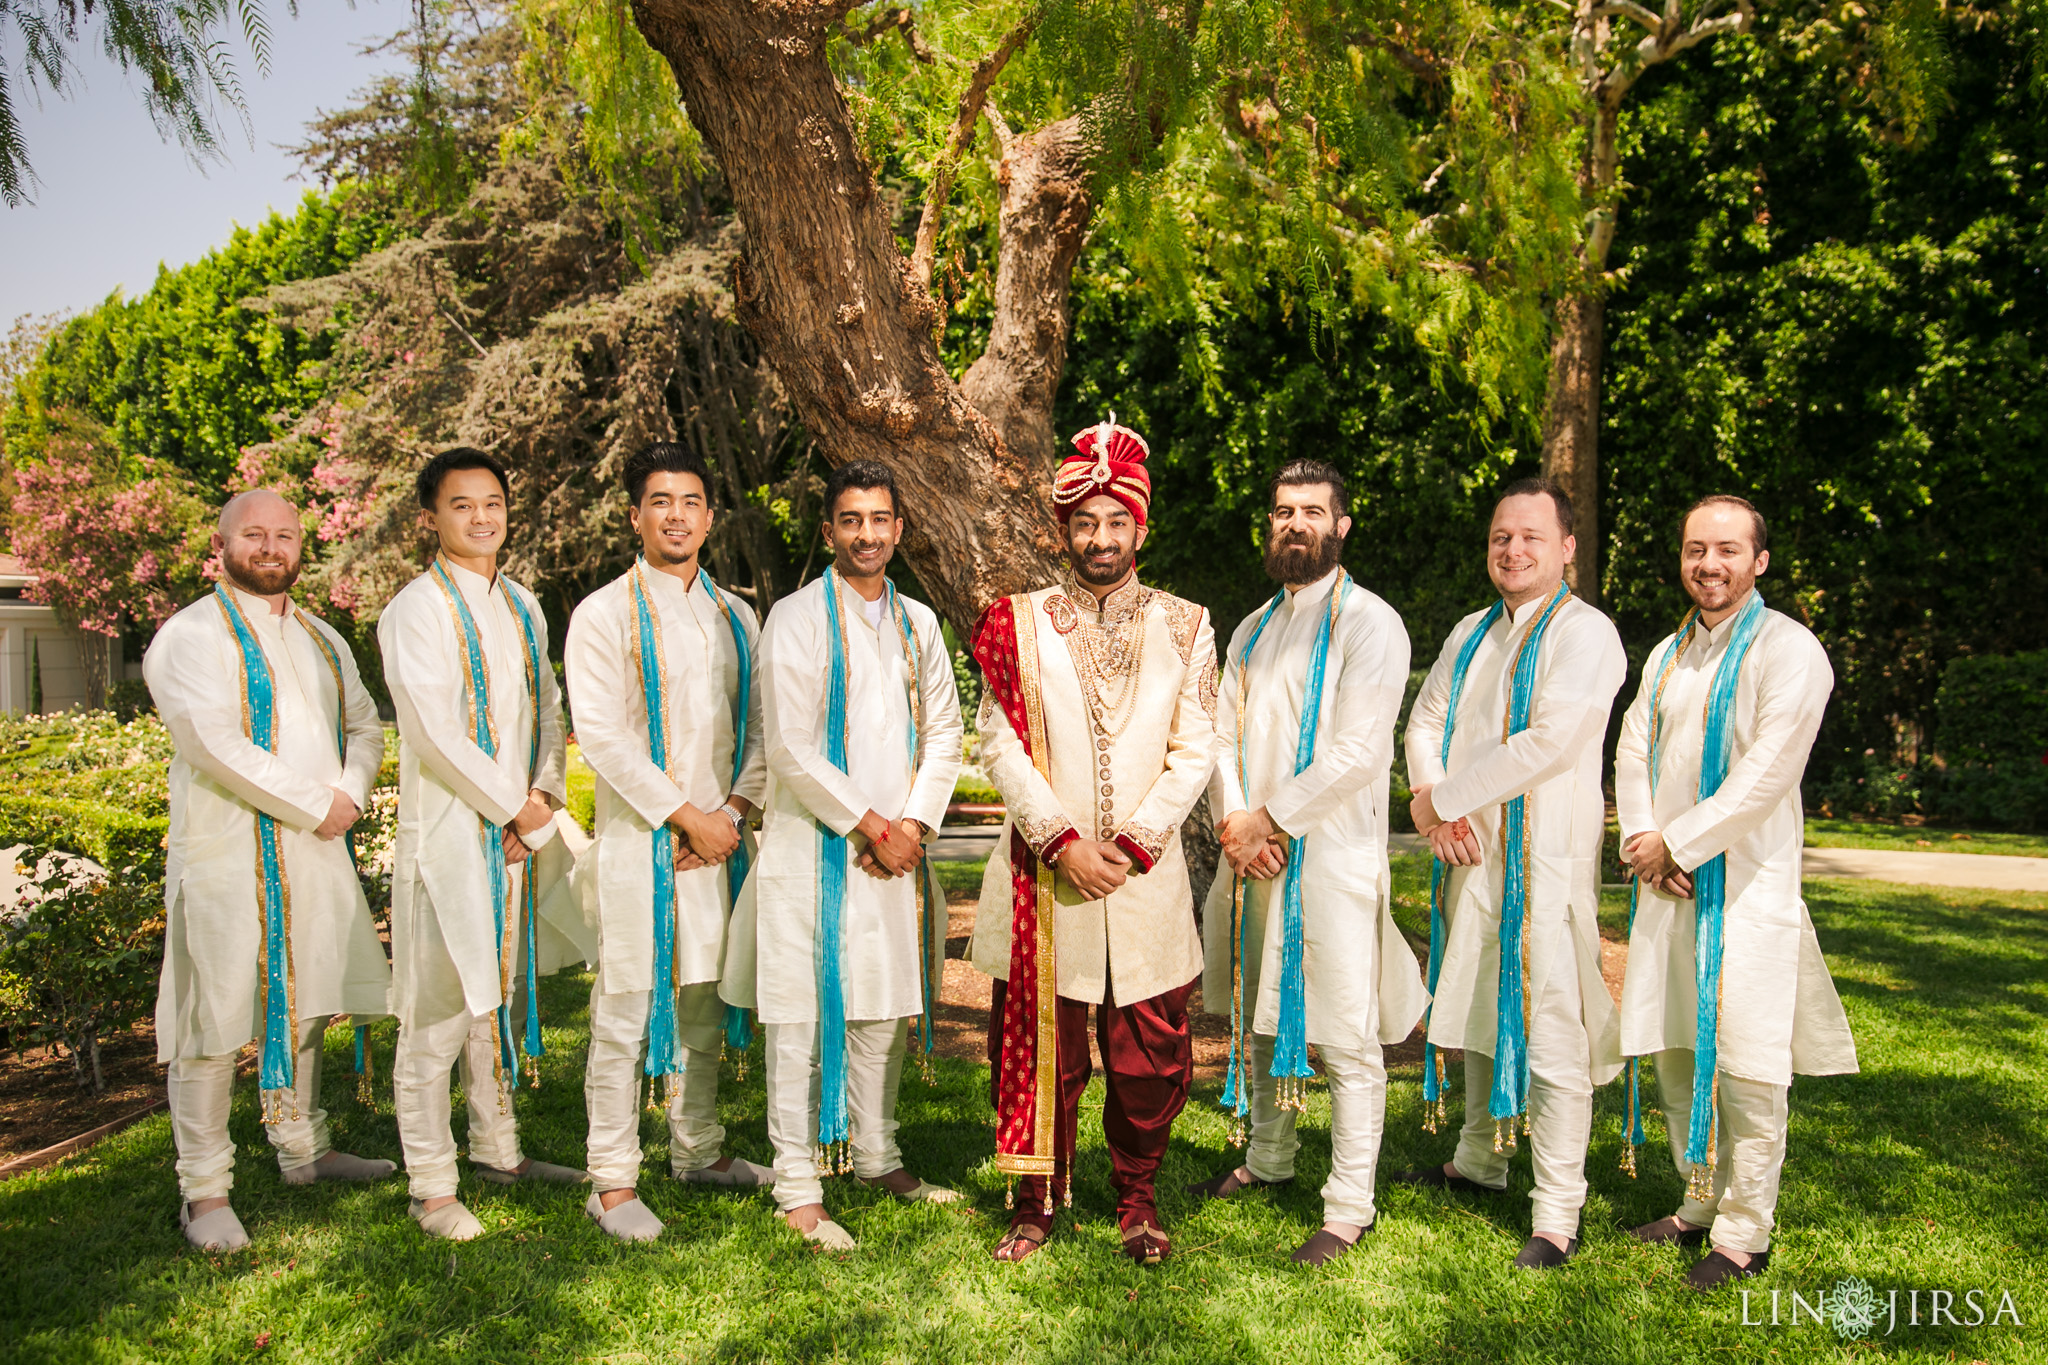 021 richard nixon library yorba linda indian groomsmen wedding photography